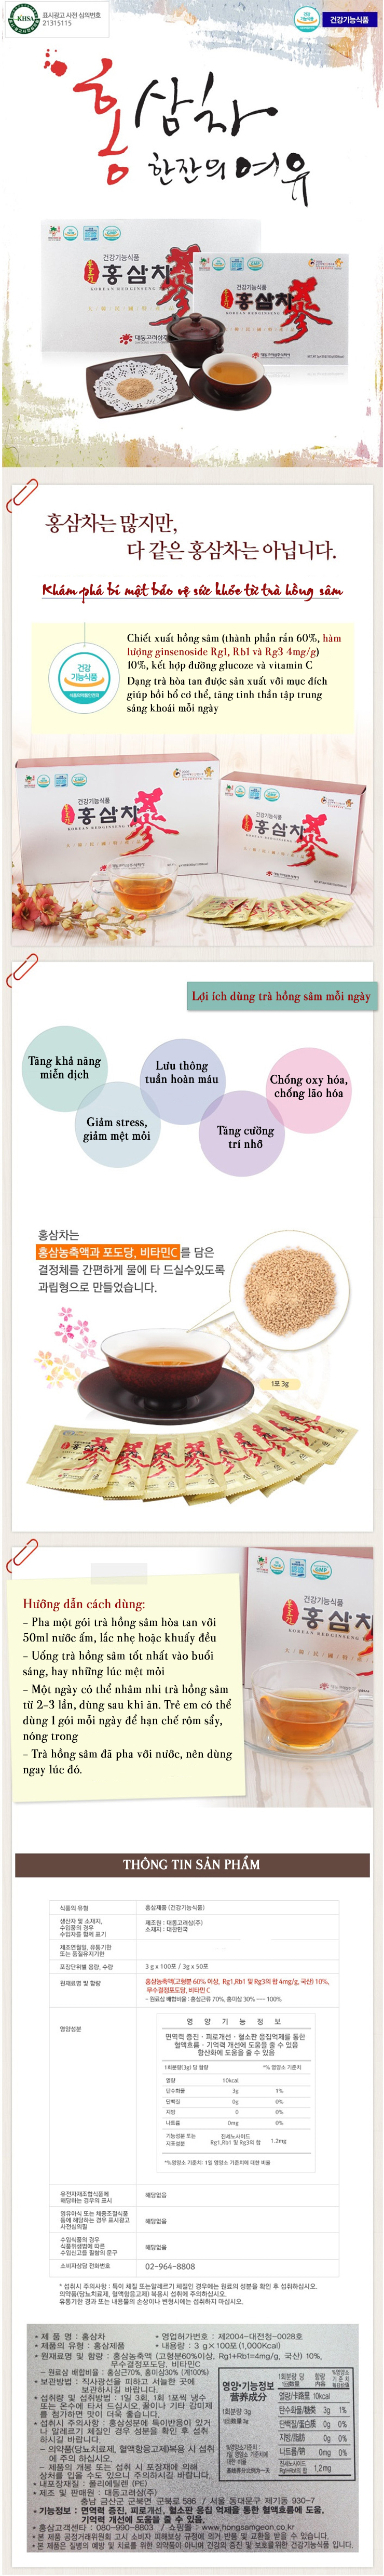 Combo 2 Hộp Trà Sâm Daedong 50 gói Chiết xuất từ hồng sâm nội địa 6 năm tuổi dạng trà hạt cốm Hàn Quốc 1